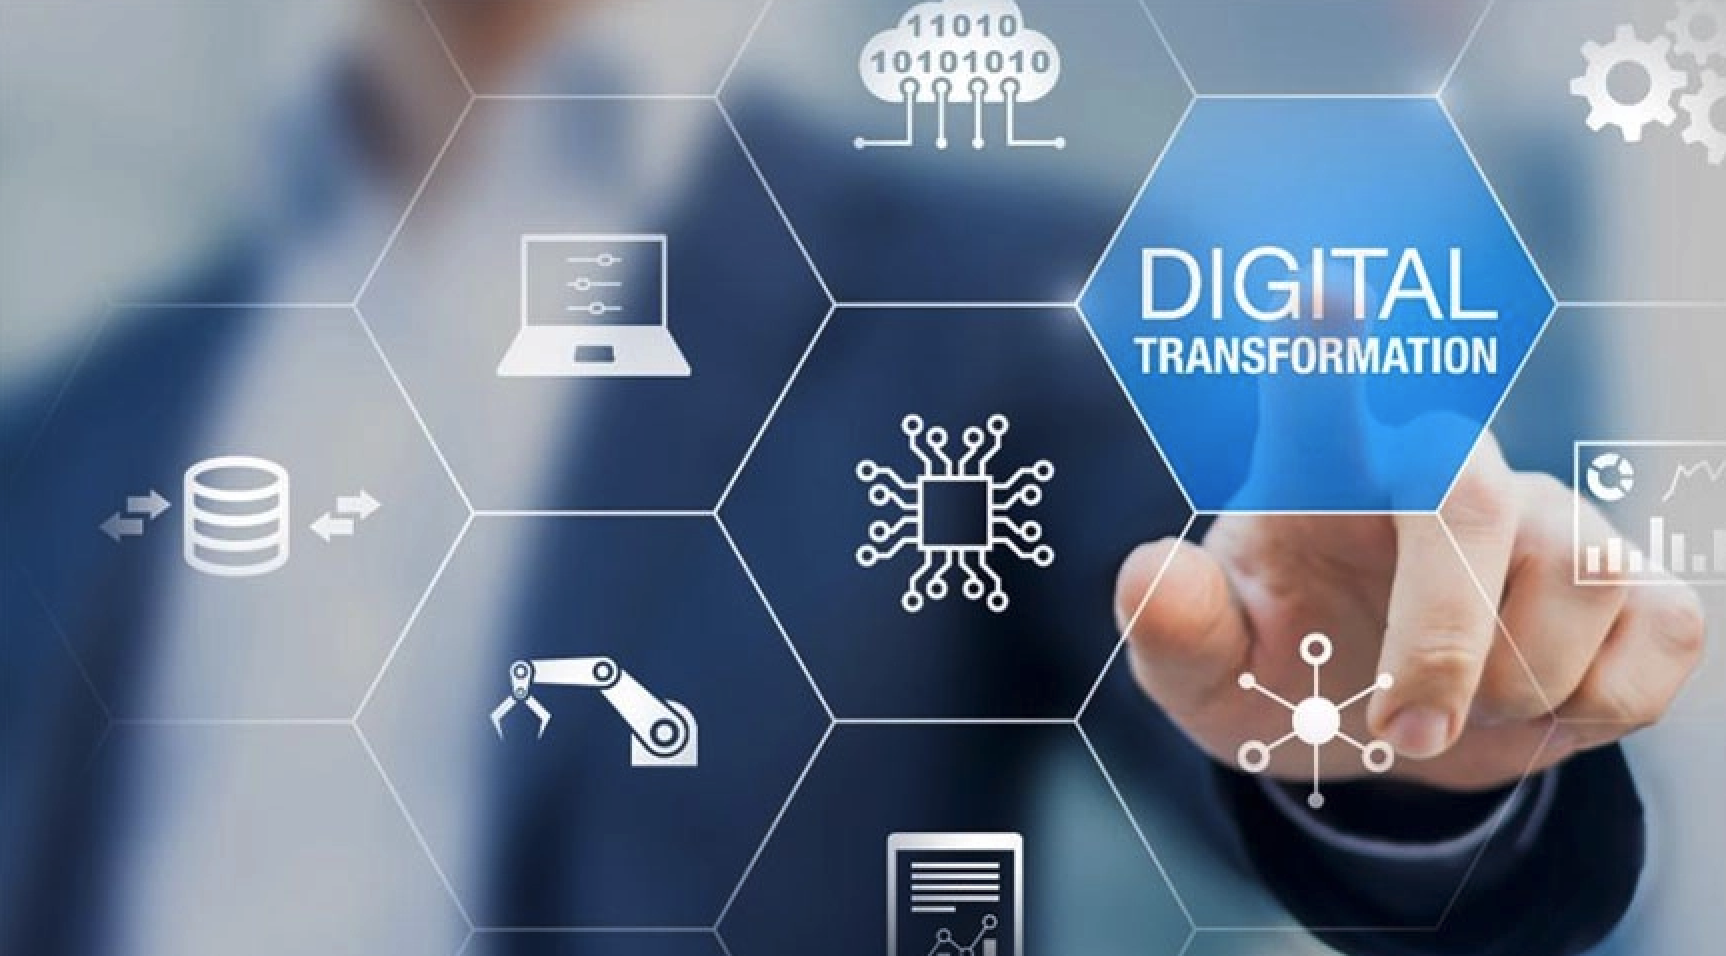 Estrategias prácticas para la transformación digital